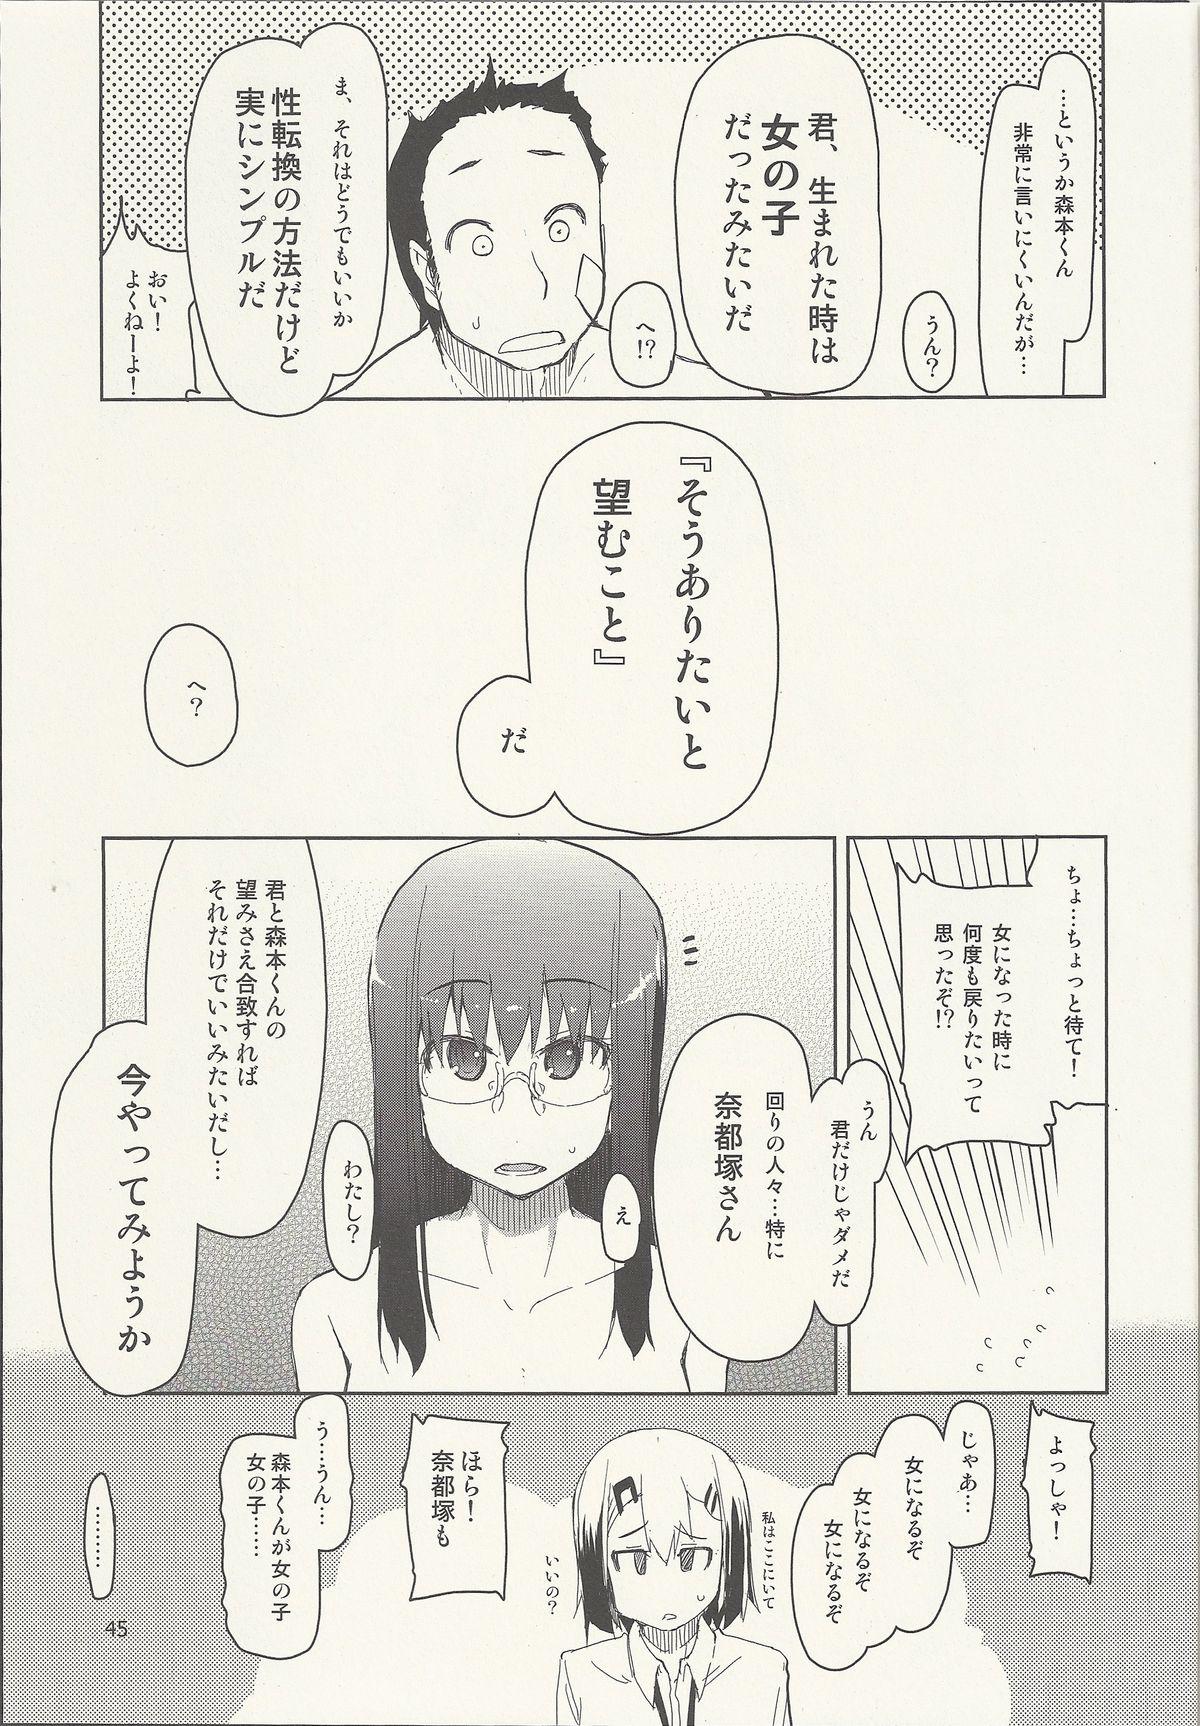 Natsuzuka-san no Himitsu. Vol. 6 Kanketsu Hen 46